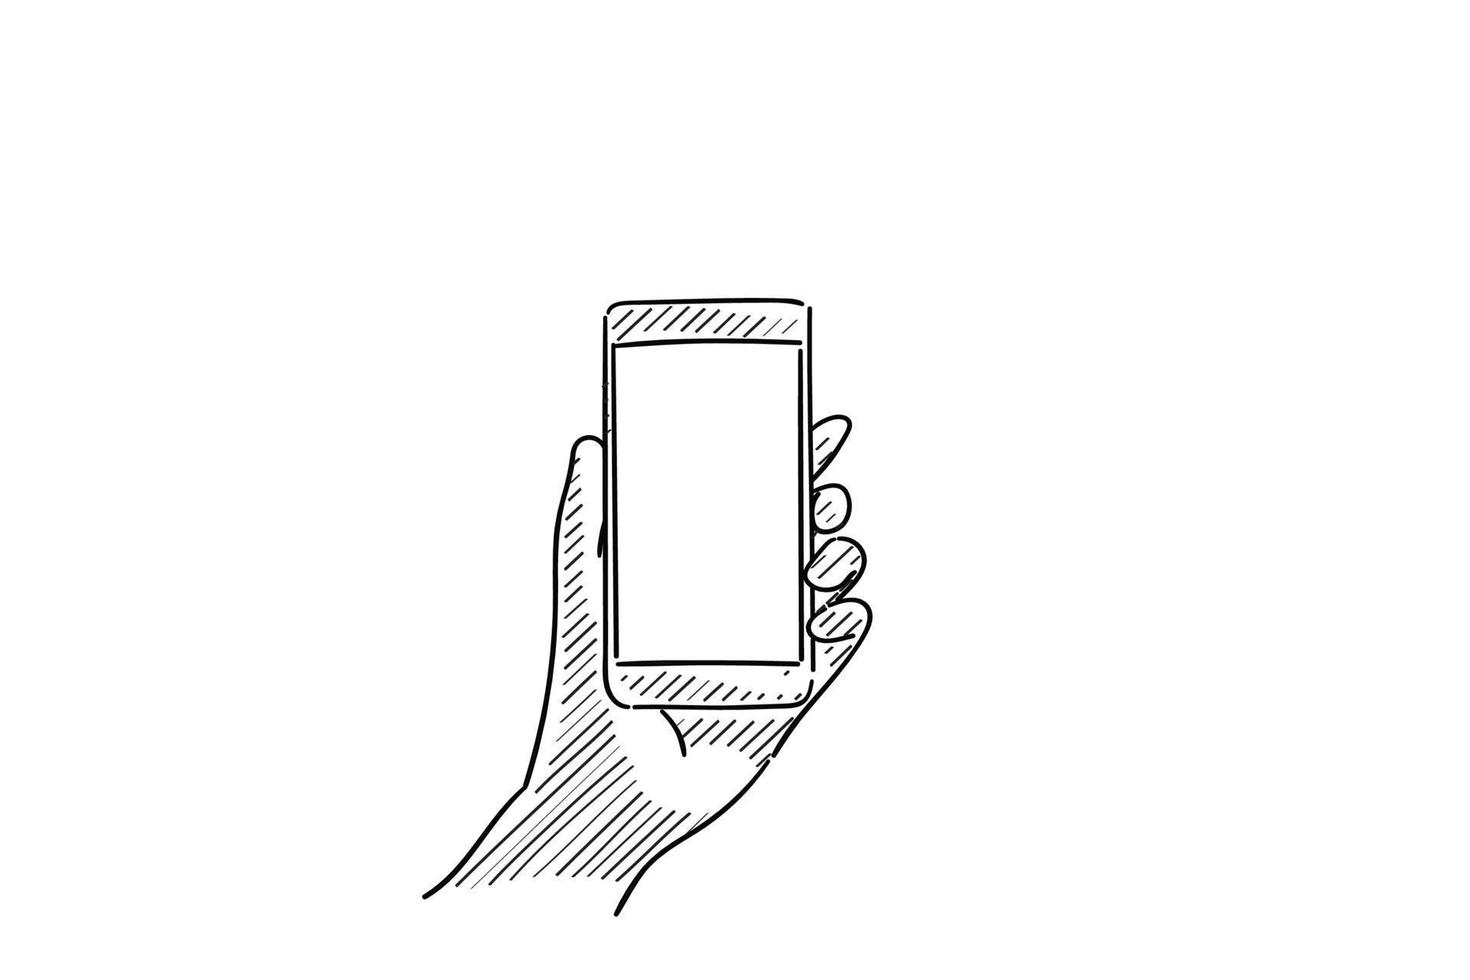 mano izquierda usando el teléfono móvil, mostrando la pantalla en blanco para el espacio de copia - dibujo de ilustración vectorial dibujado a mano con líneas negras, aislado en fondo blanco vector